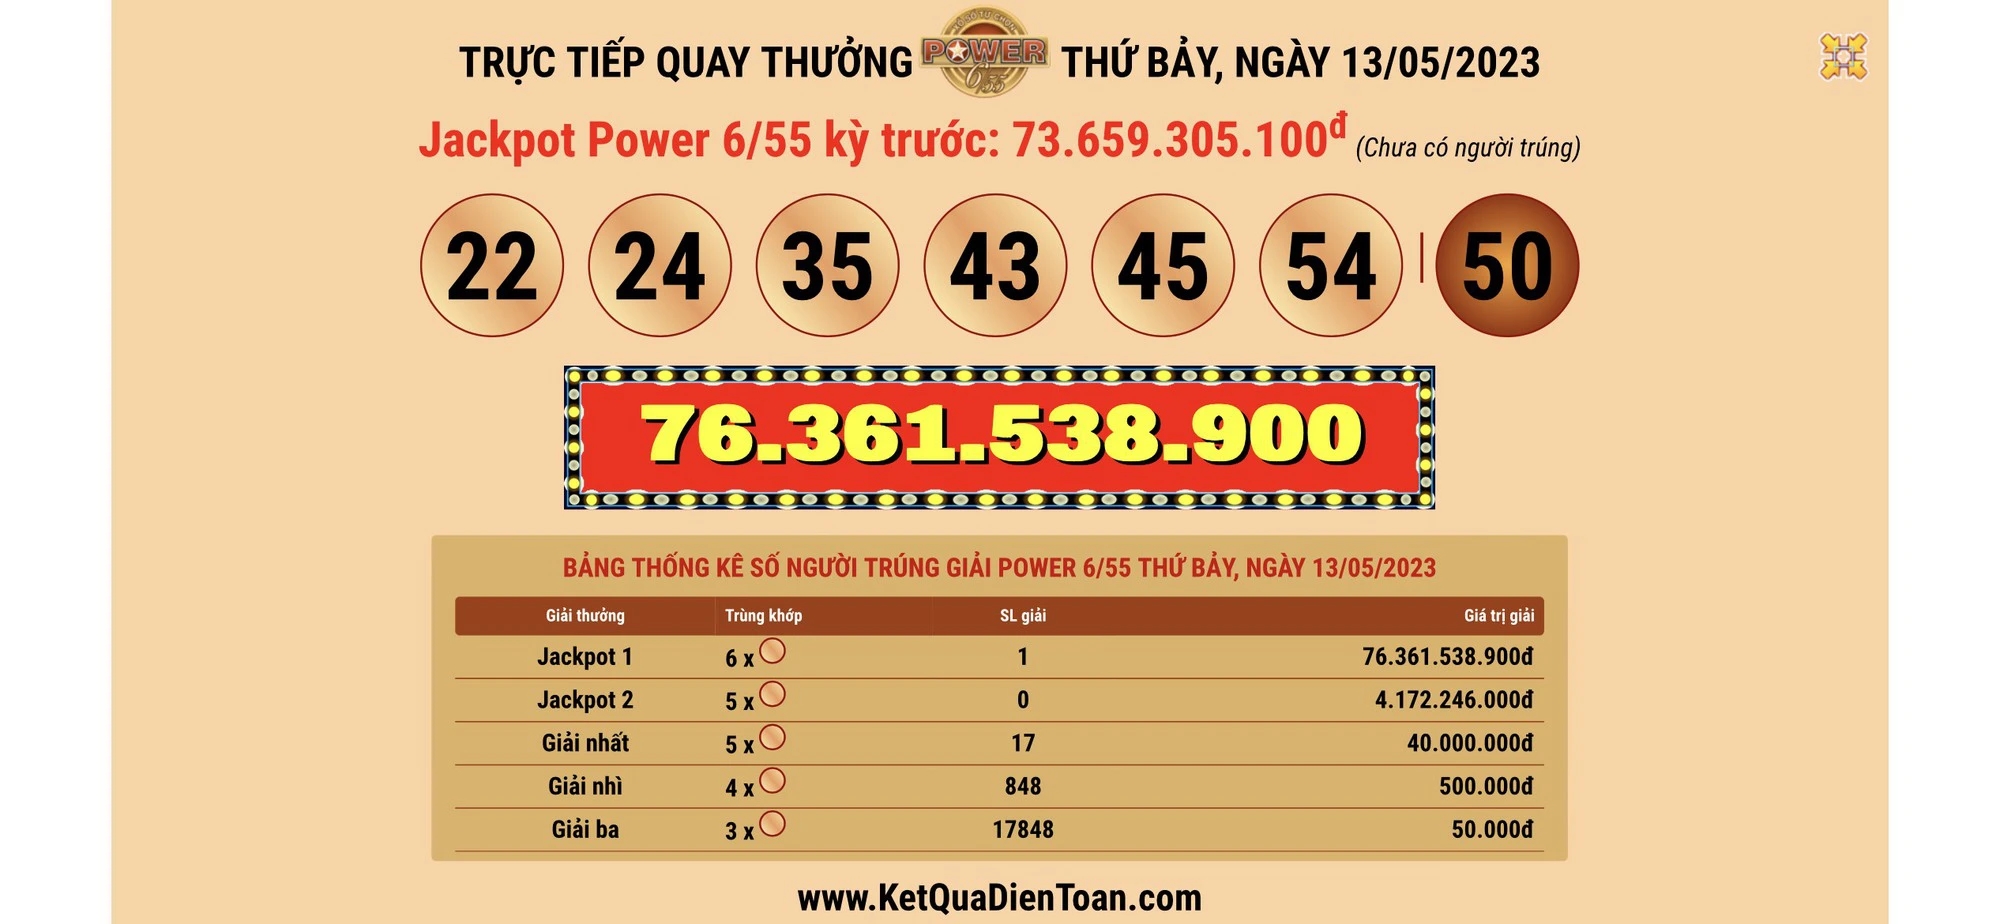 Vé số Vietlott trúng 76,3 tỉ đồng bán ở quận Tân Phú - TPHCM-1